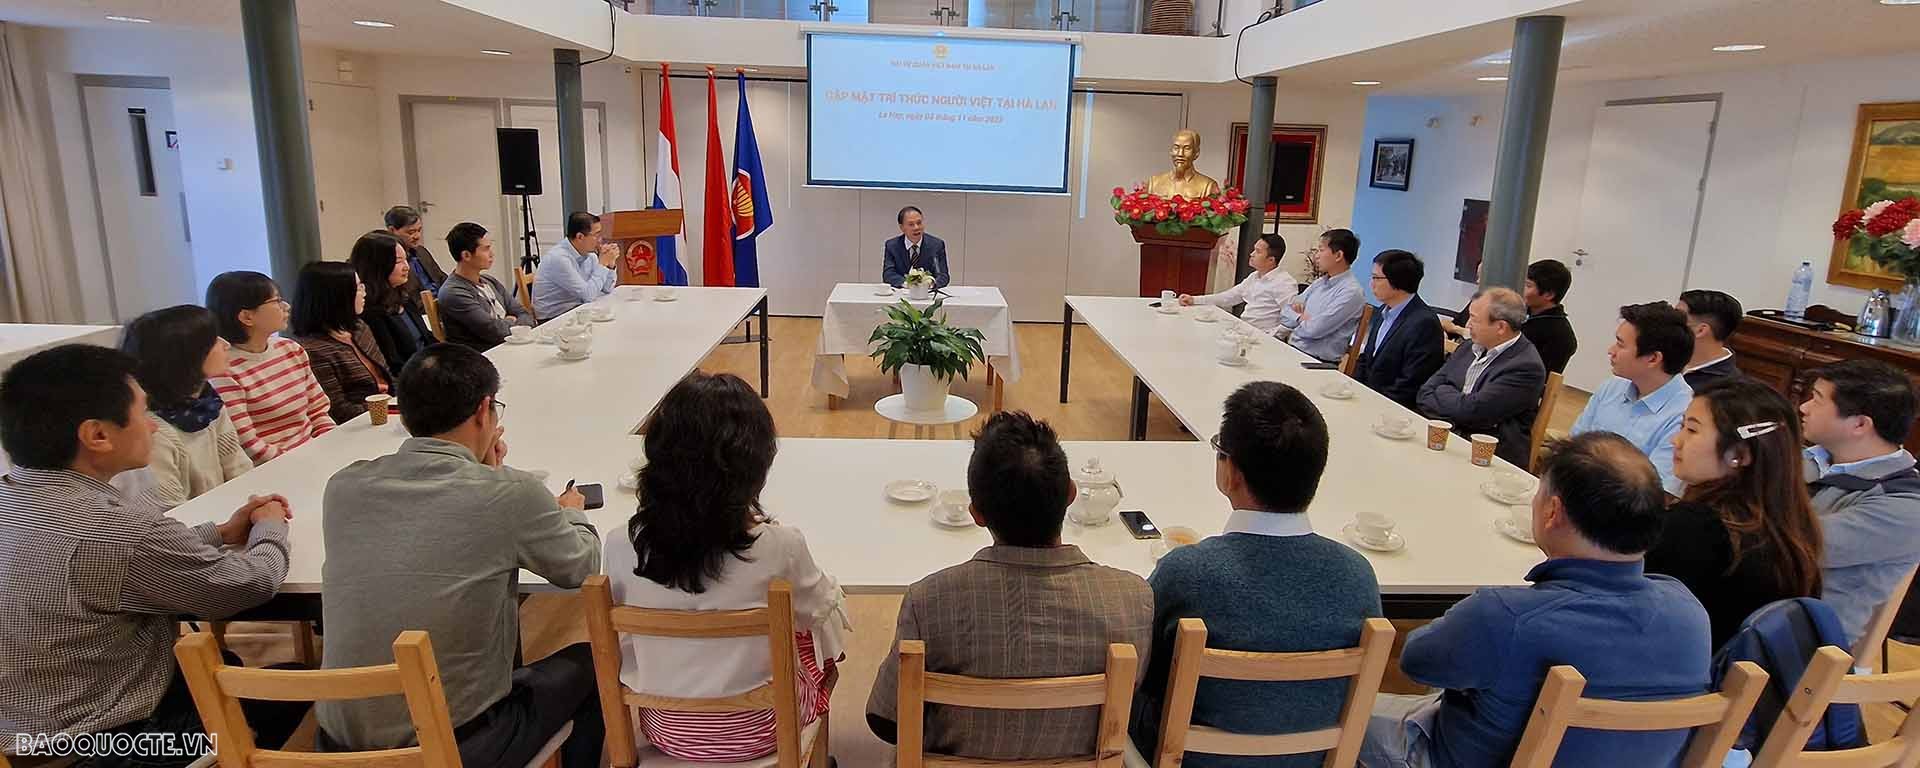 Đại sứ Phạm Việt Anh gặp mặt một số trí thức người Việt Nam đang sinh sống và làm việc tại Hà Lan